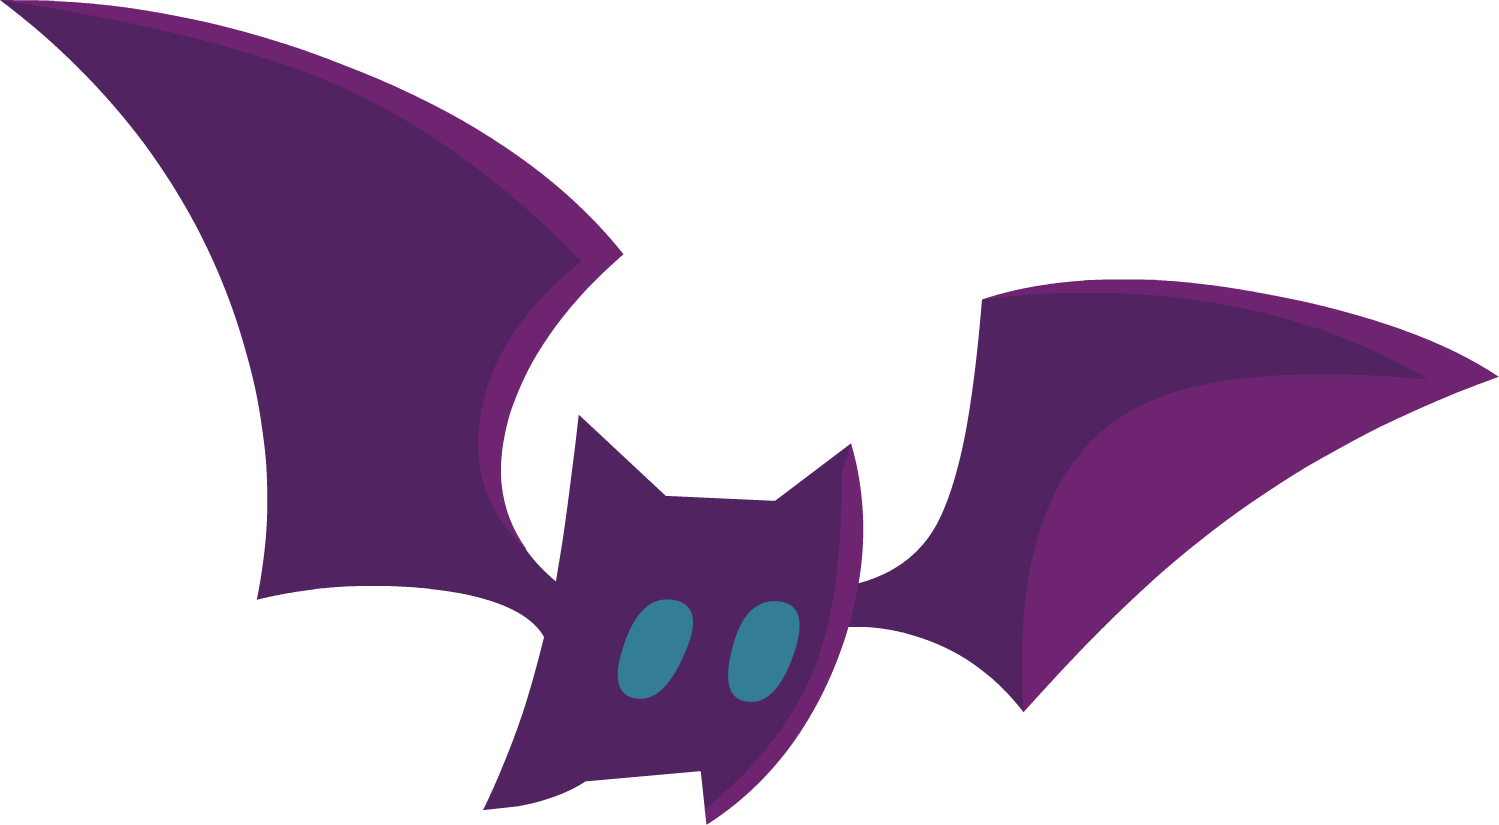 Pet Bat Purple - October 31 (1499x825)